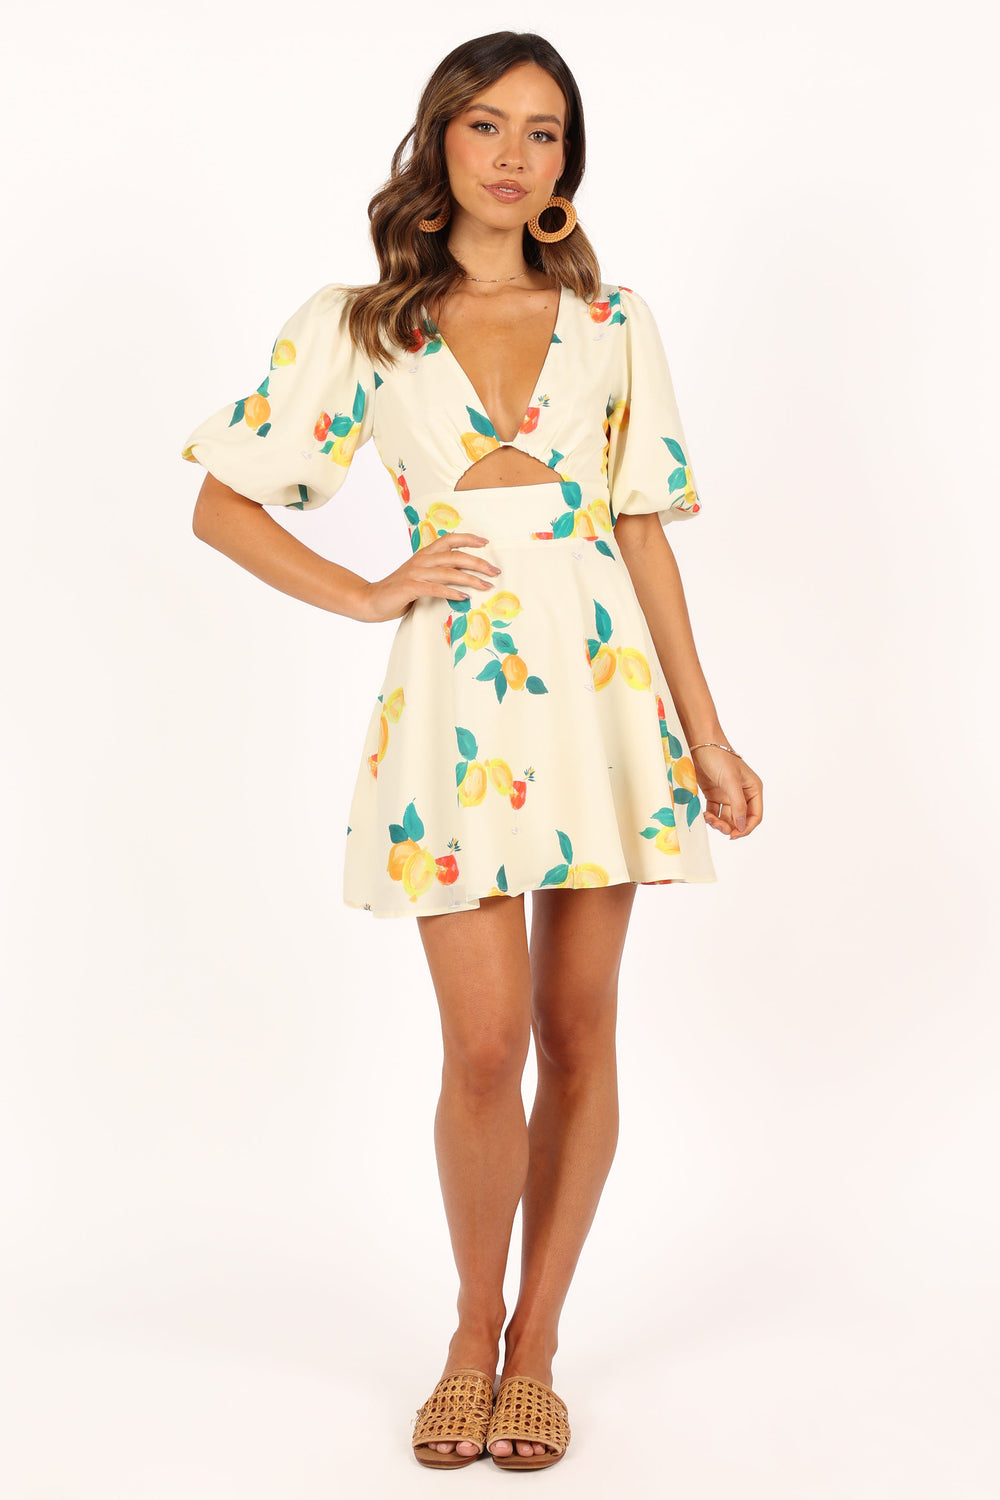 Petal and Pup USA DRESSES Mikaela Mini Dress - Lemon Print